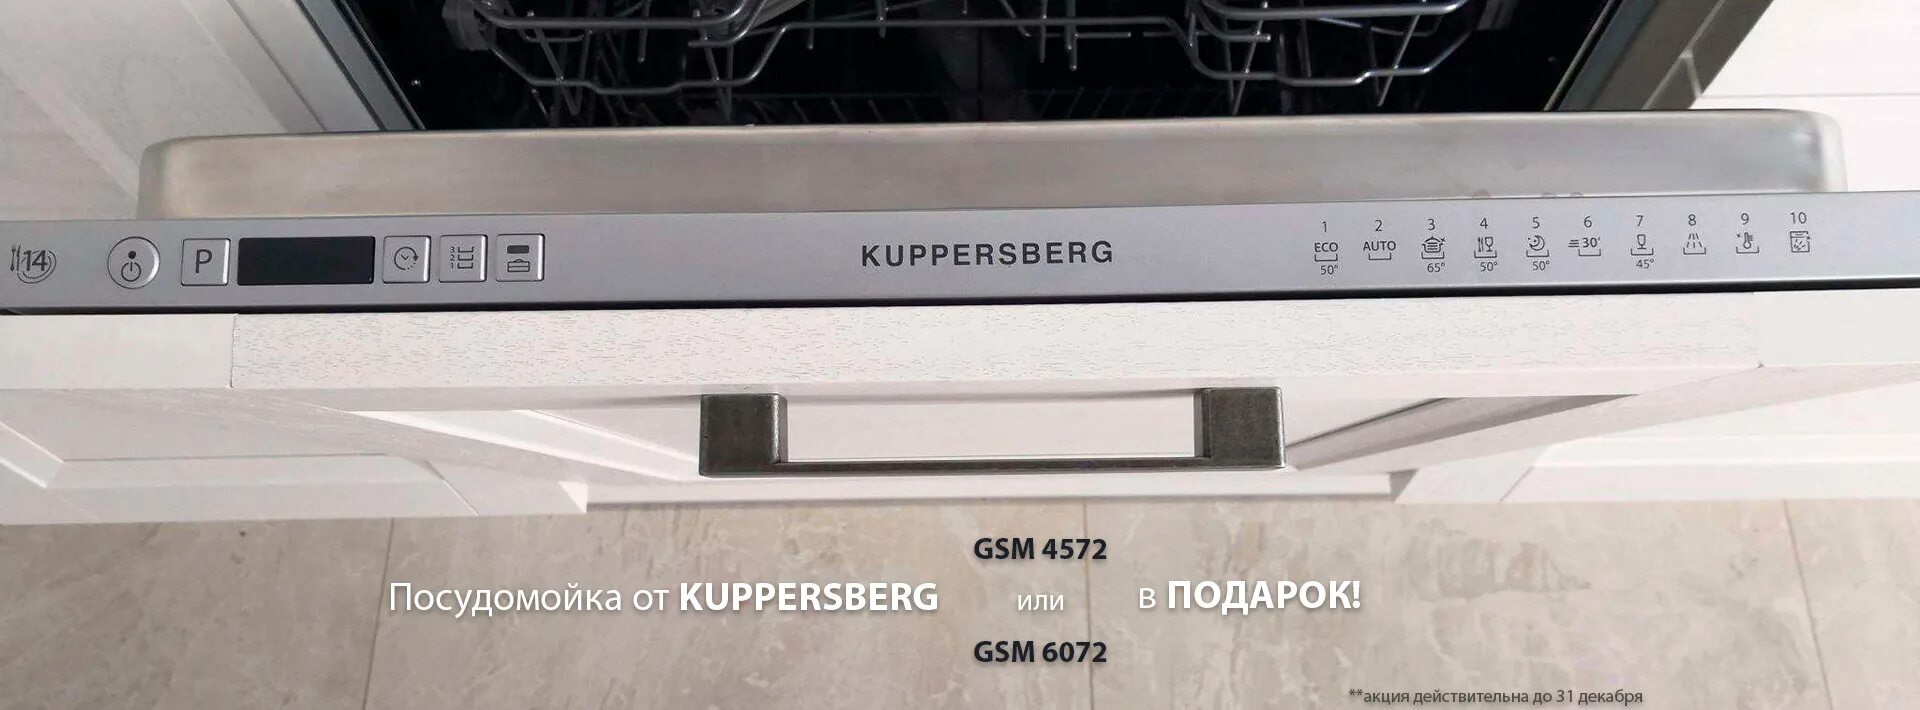 4574 kuppersberg gsm посудомоечная. Куперсберг посудомоечная 6072. Kuppersberg GSM 4572 схема встраивания. Kuppersberg Eco 302. Фасад для Kuppersberg GSM 6072.